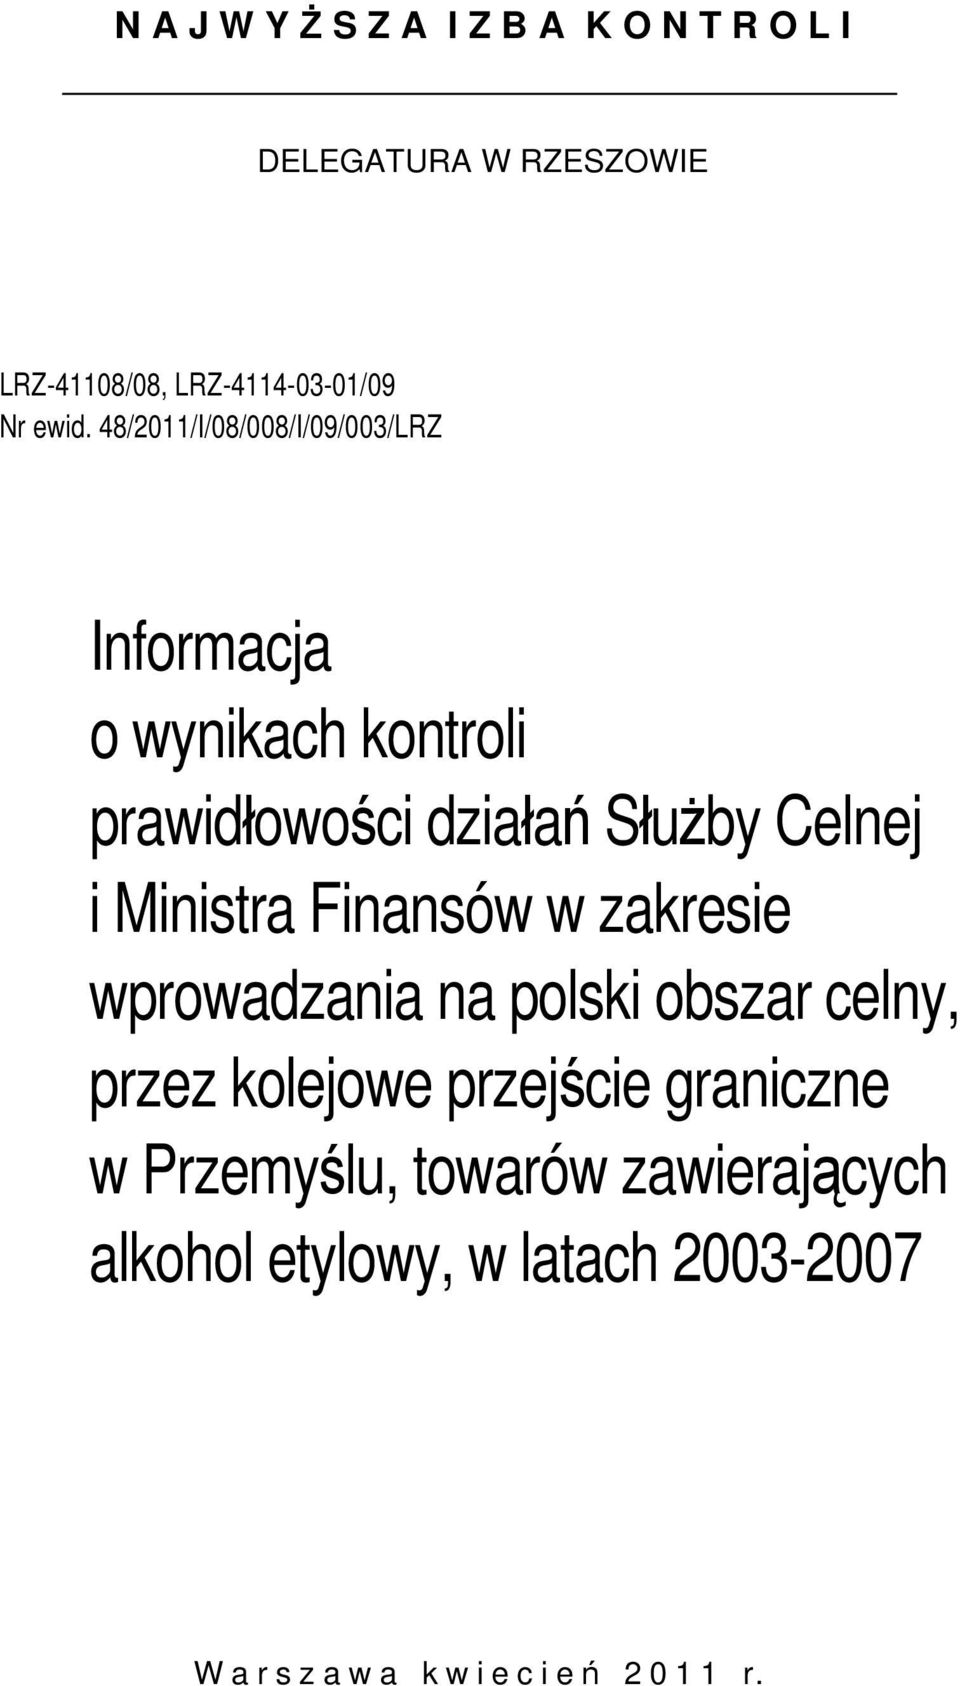 Celnej i Ministra Finansów w zakresie wprowadzania na polski obszar celny, przez kolejowe przejście